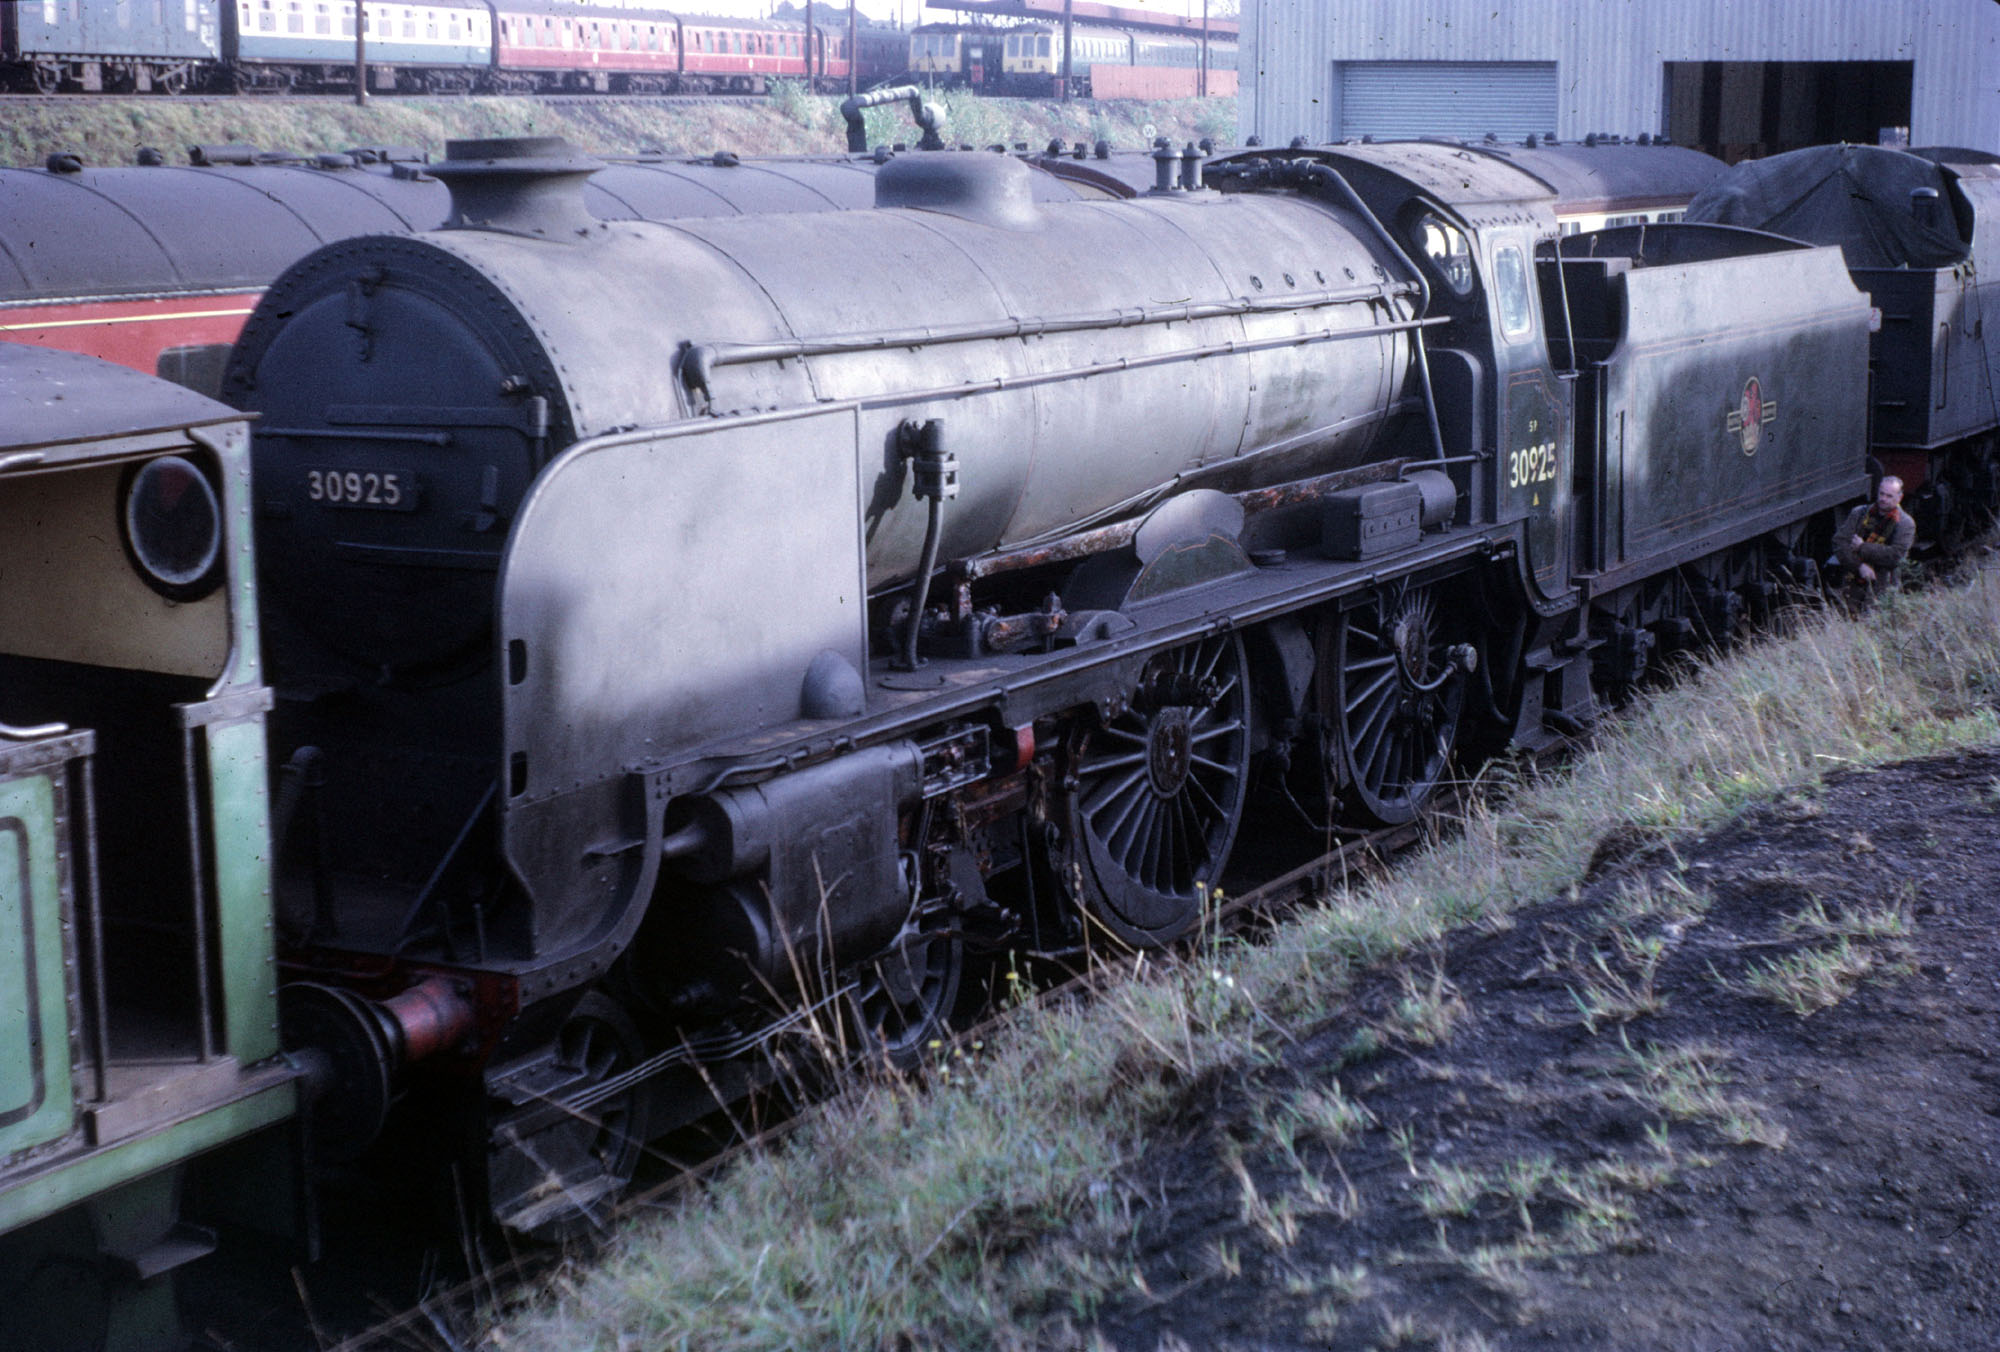 30925 stored at Tyseley. 22nd November 1970. Dave Mant